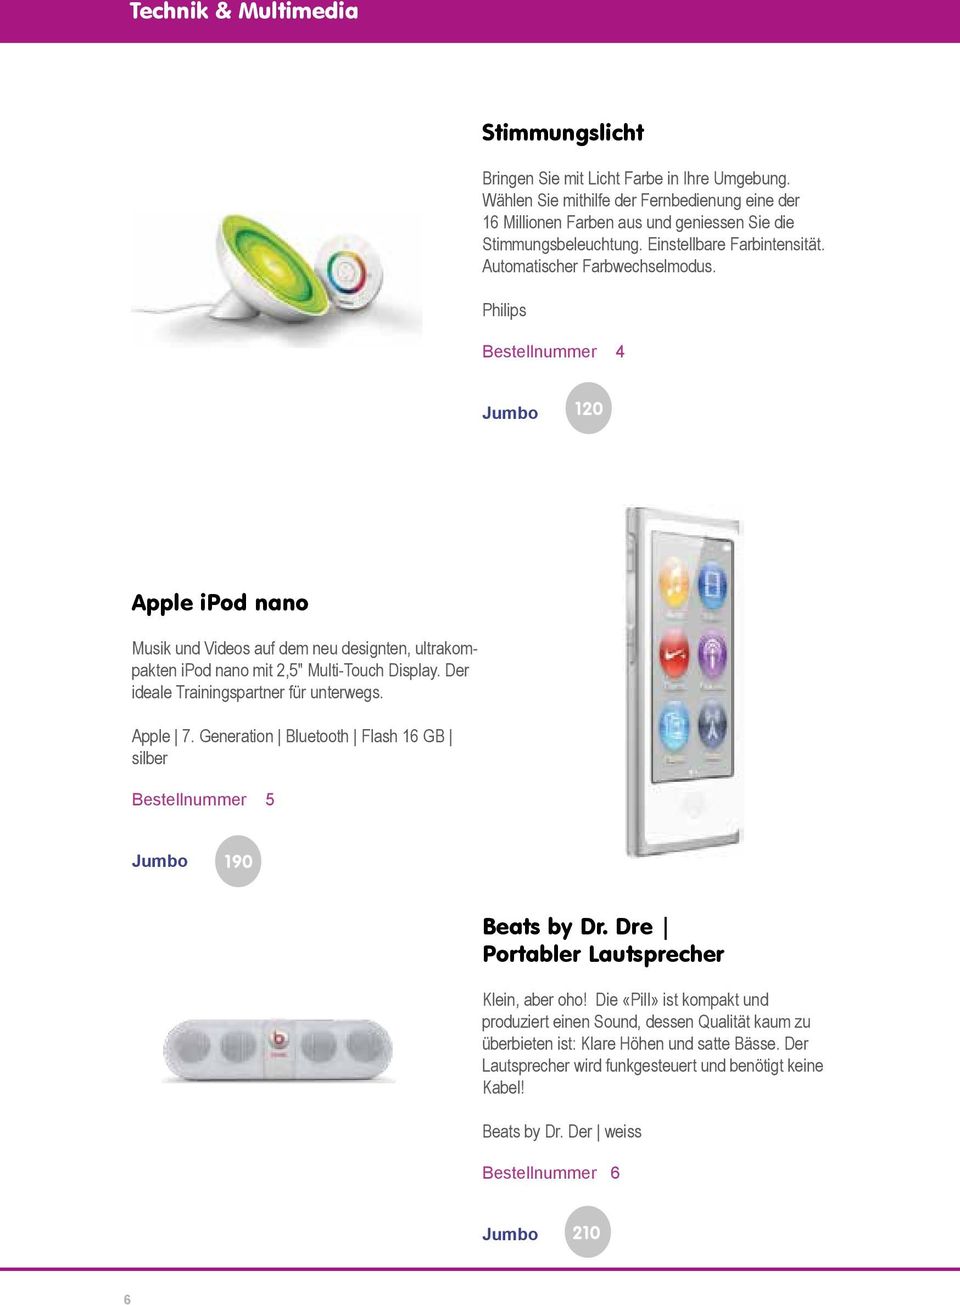 Philips Bestellnummer 4 120 Apple ipod nano Musik und Videos auf dem neu designten, ultrakompakten ipod nano mit 2,5" Multi-Touch Display. Der ideale Trainingspartner für unterwegs. Apple 7.